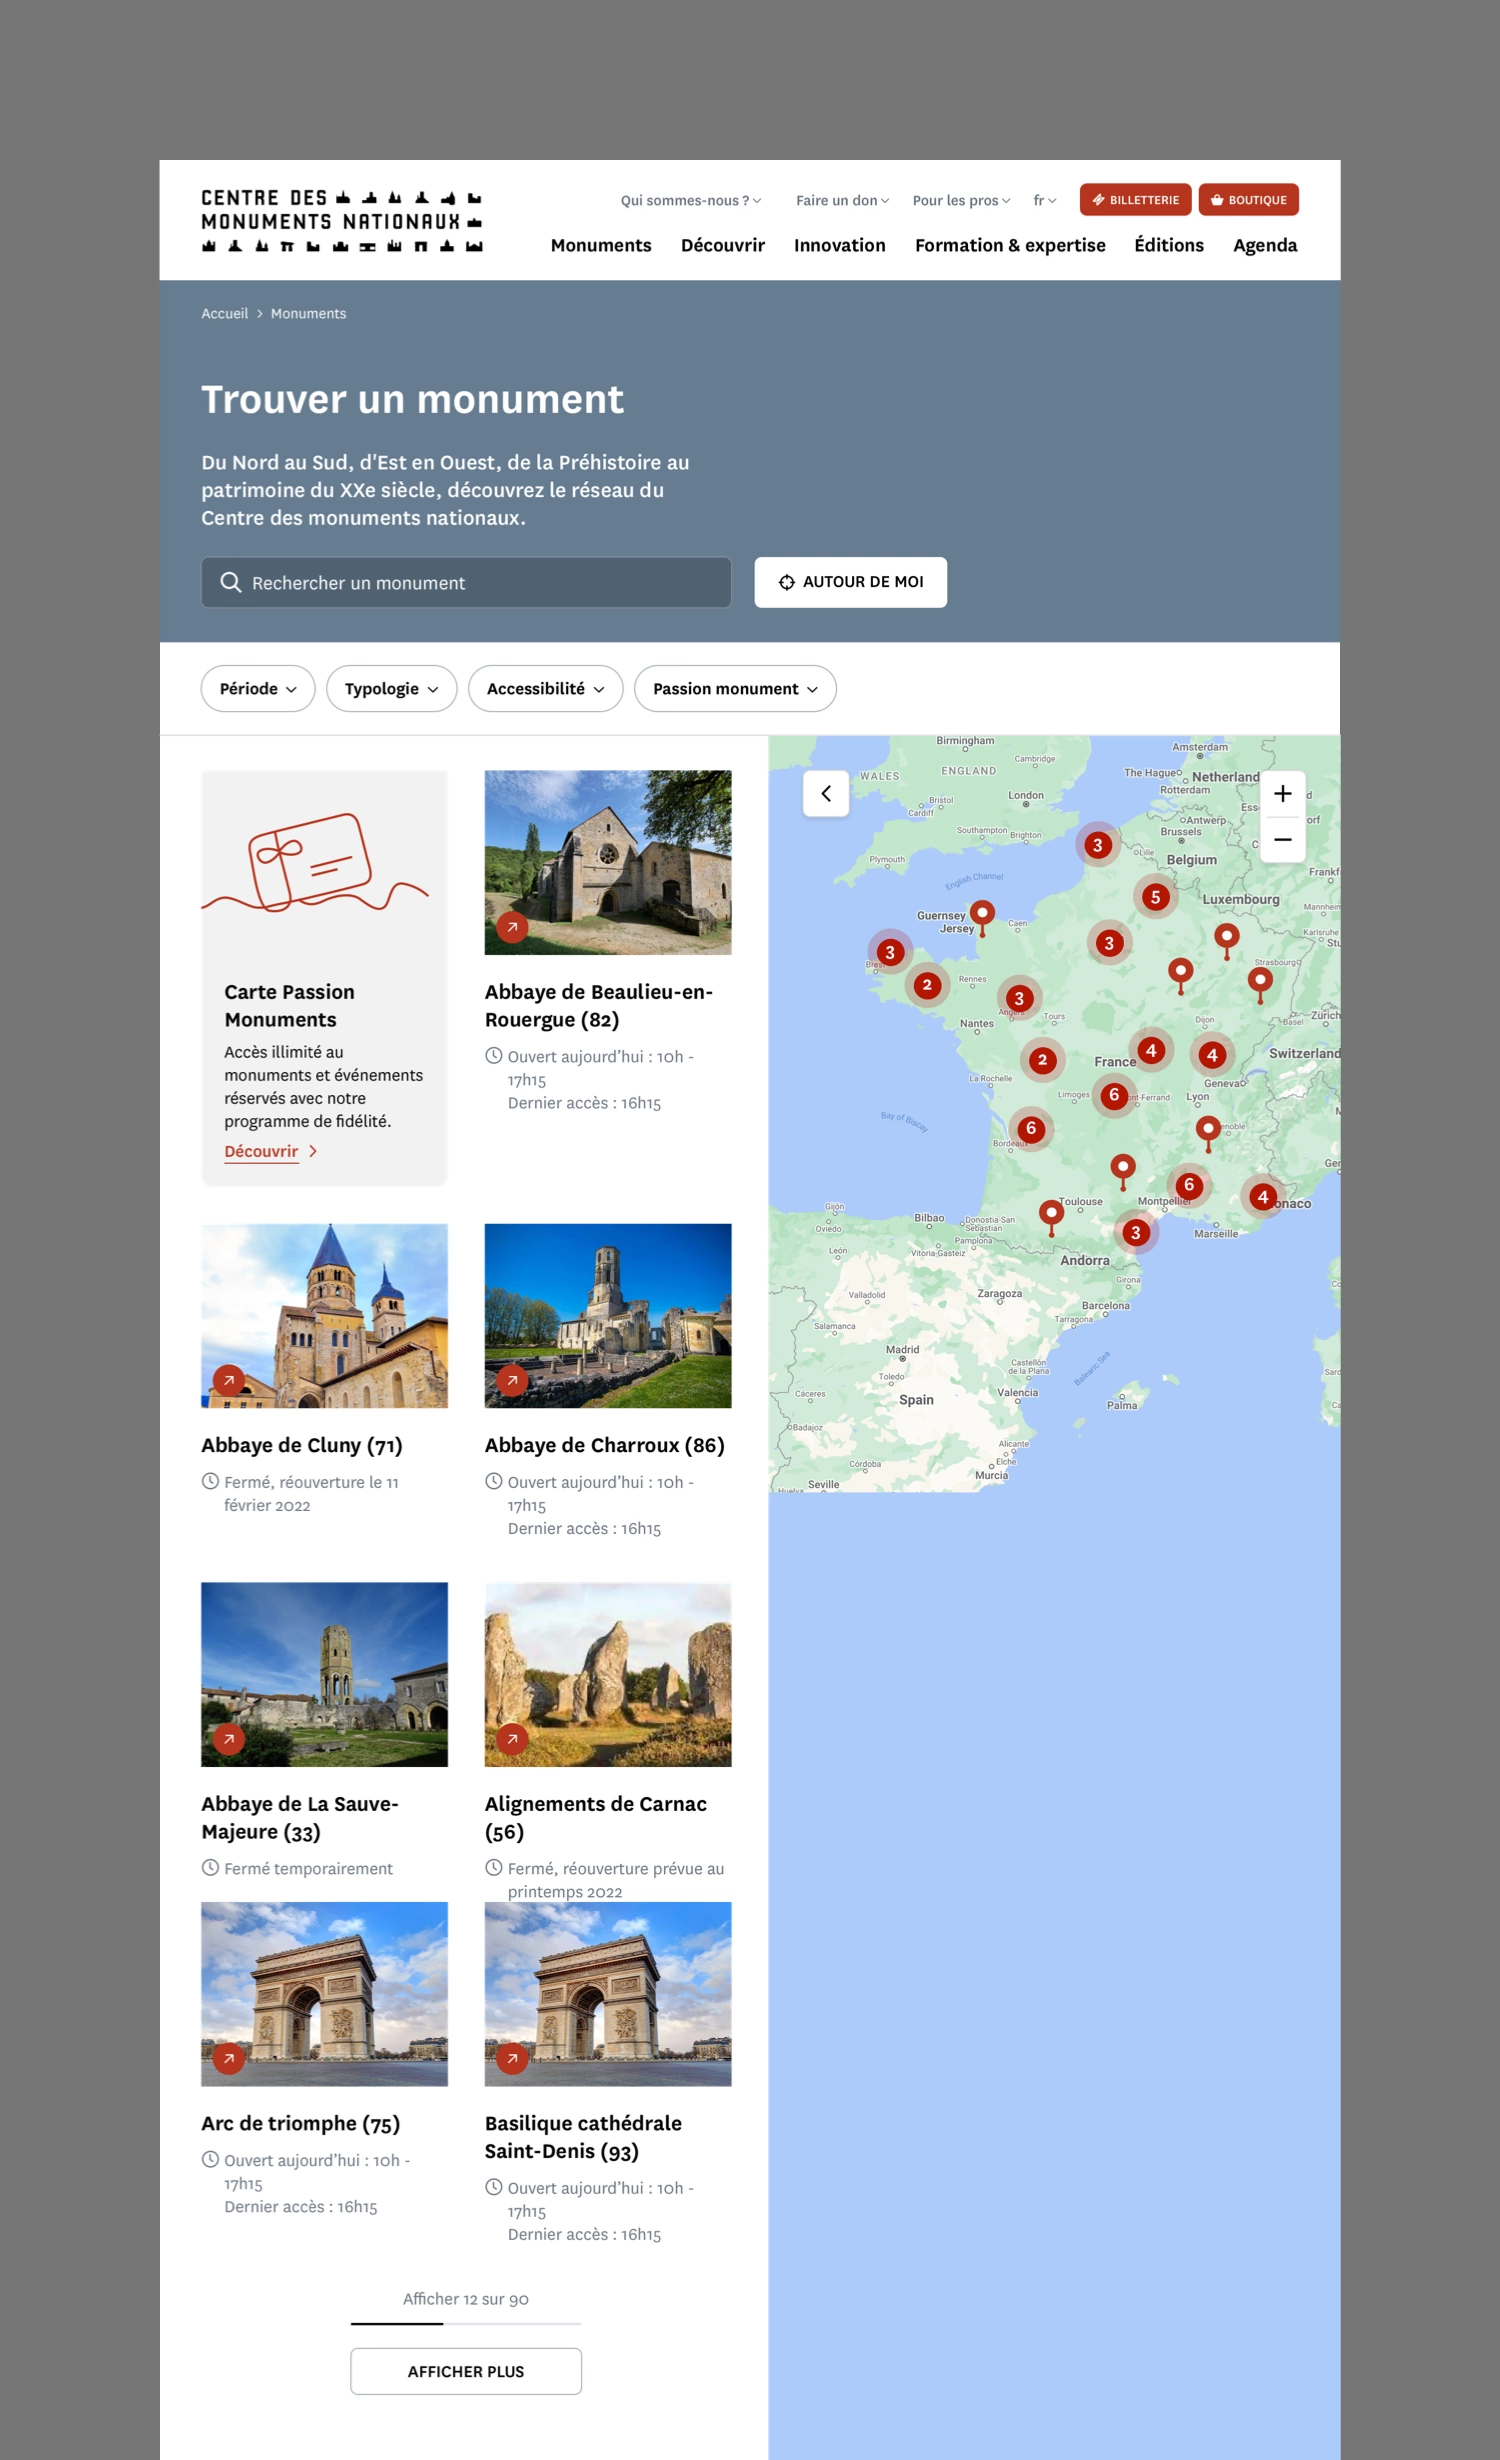 aperçu de la page des monuments en desktop du site portail du centre des monuments nationaux